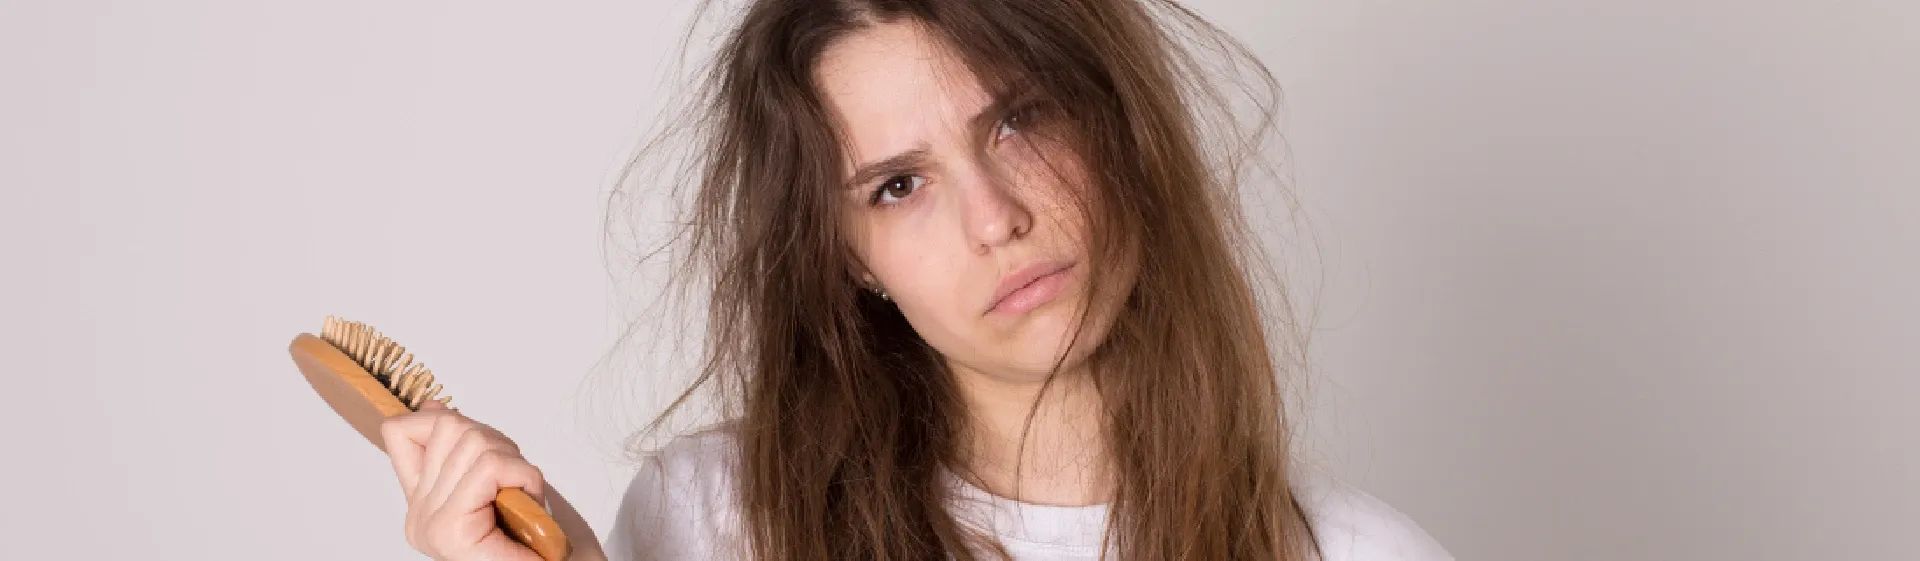 Tendo um bad hair day? 7 produtos e dicas para salvar os fios